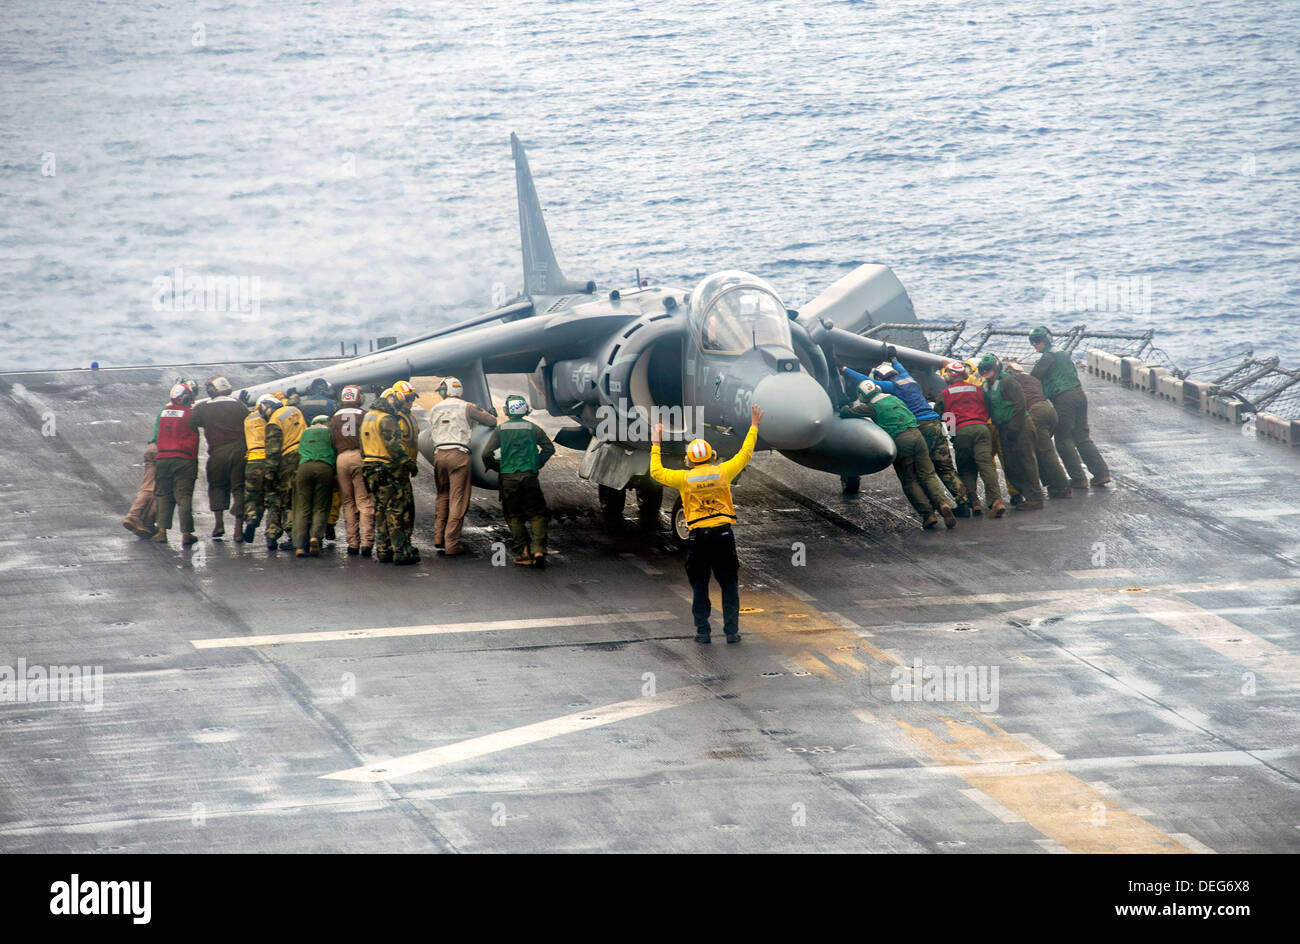 Nosotros marineros y Marines mover un Marine Corps avión AV-8B Harrier II durante una tormenta de lluvia en la cubierta de vuelo del buque de asalto anfibio USS Boxer Septiembre 11, 2013 en curso en el Océano Pacífico el 11 de septiembre, 2013. El boxeador estaba en marcha en los EE.UU. 7ª Flota área de responsabilidad apoyando operaciones de seguridad marítima y los esfuerzos de cooperación de seguridad de teatro. Foto de stock